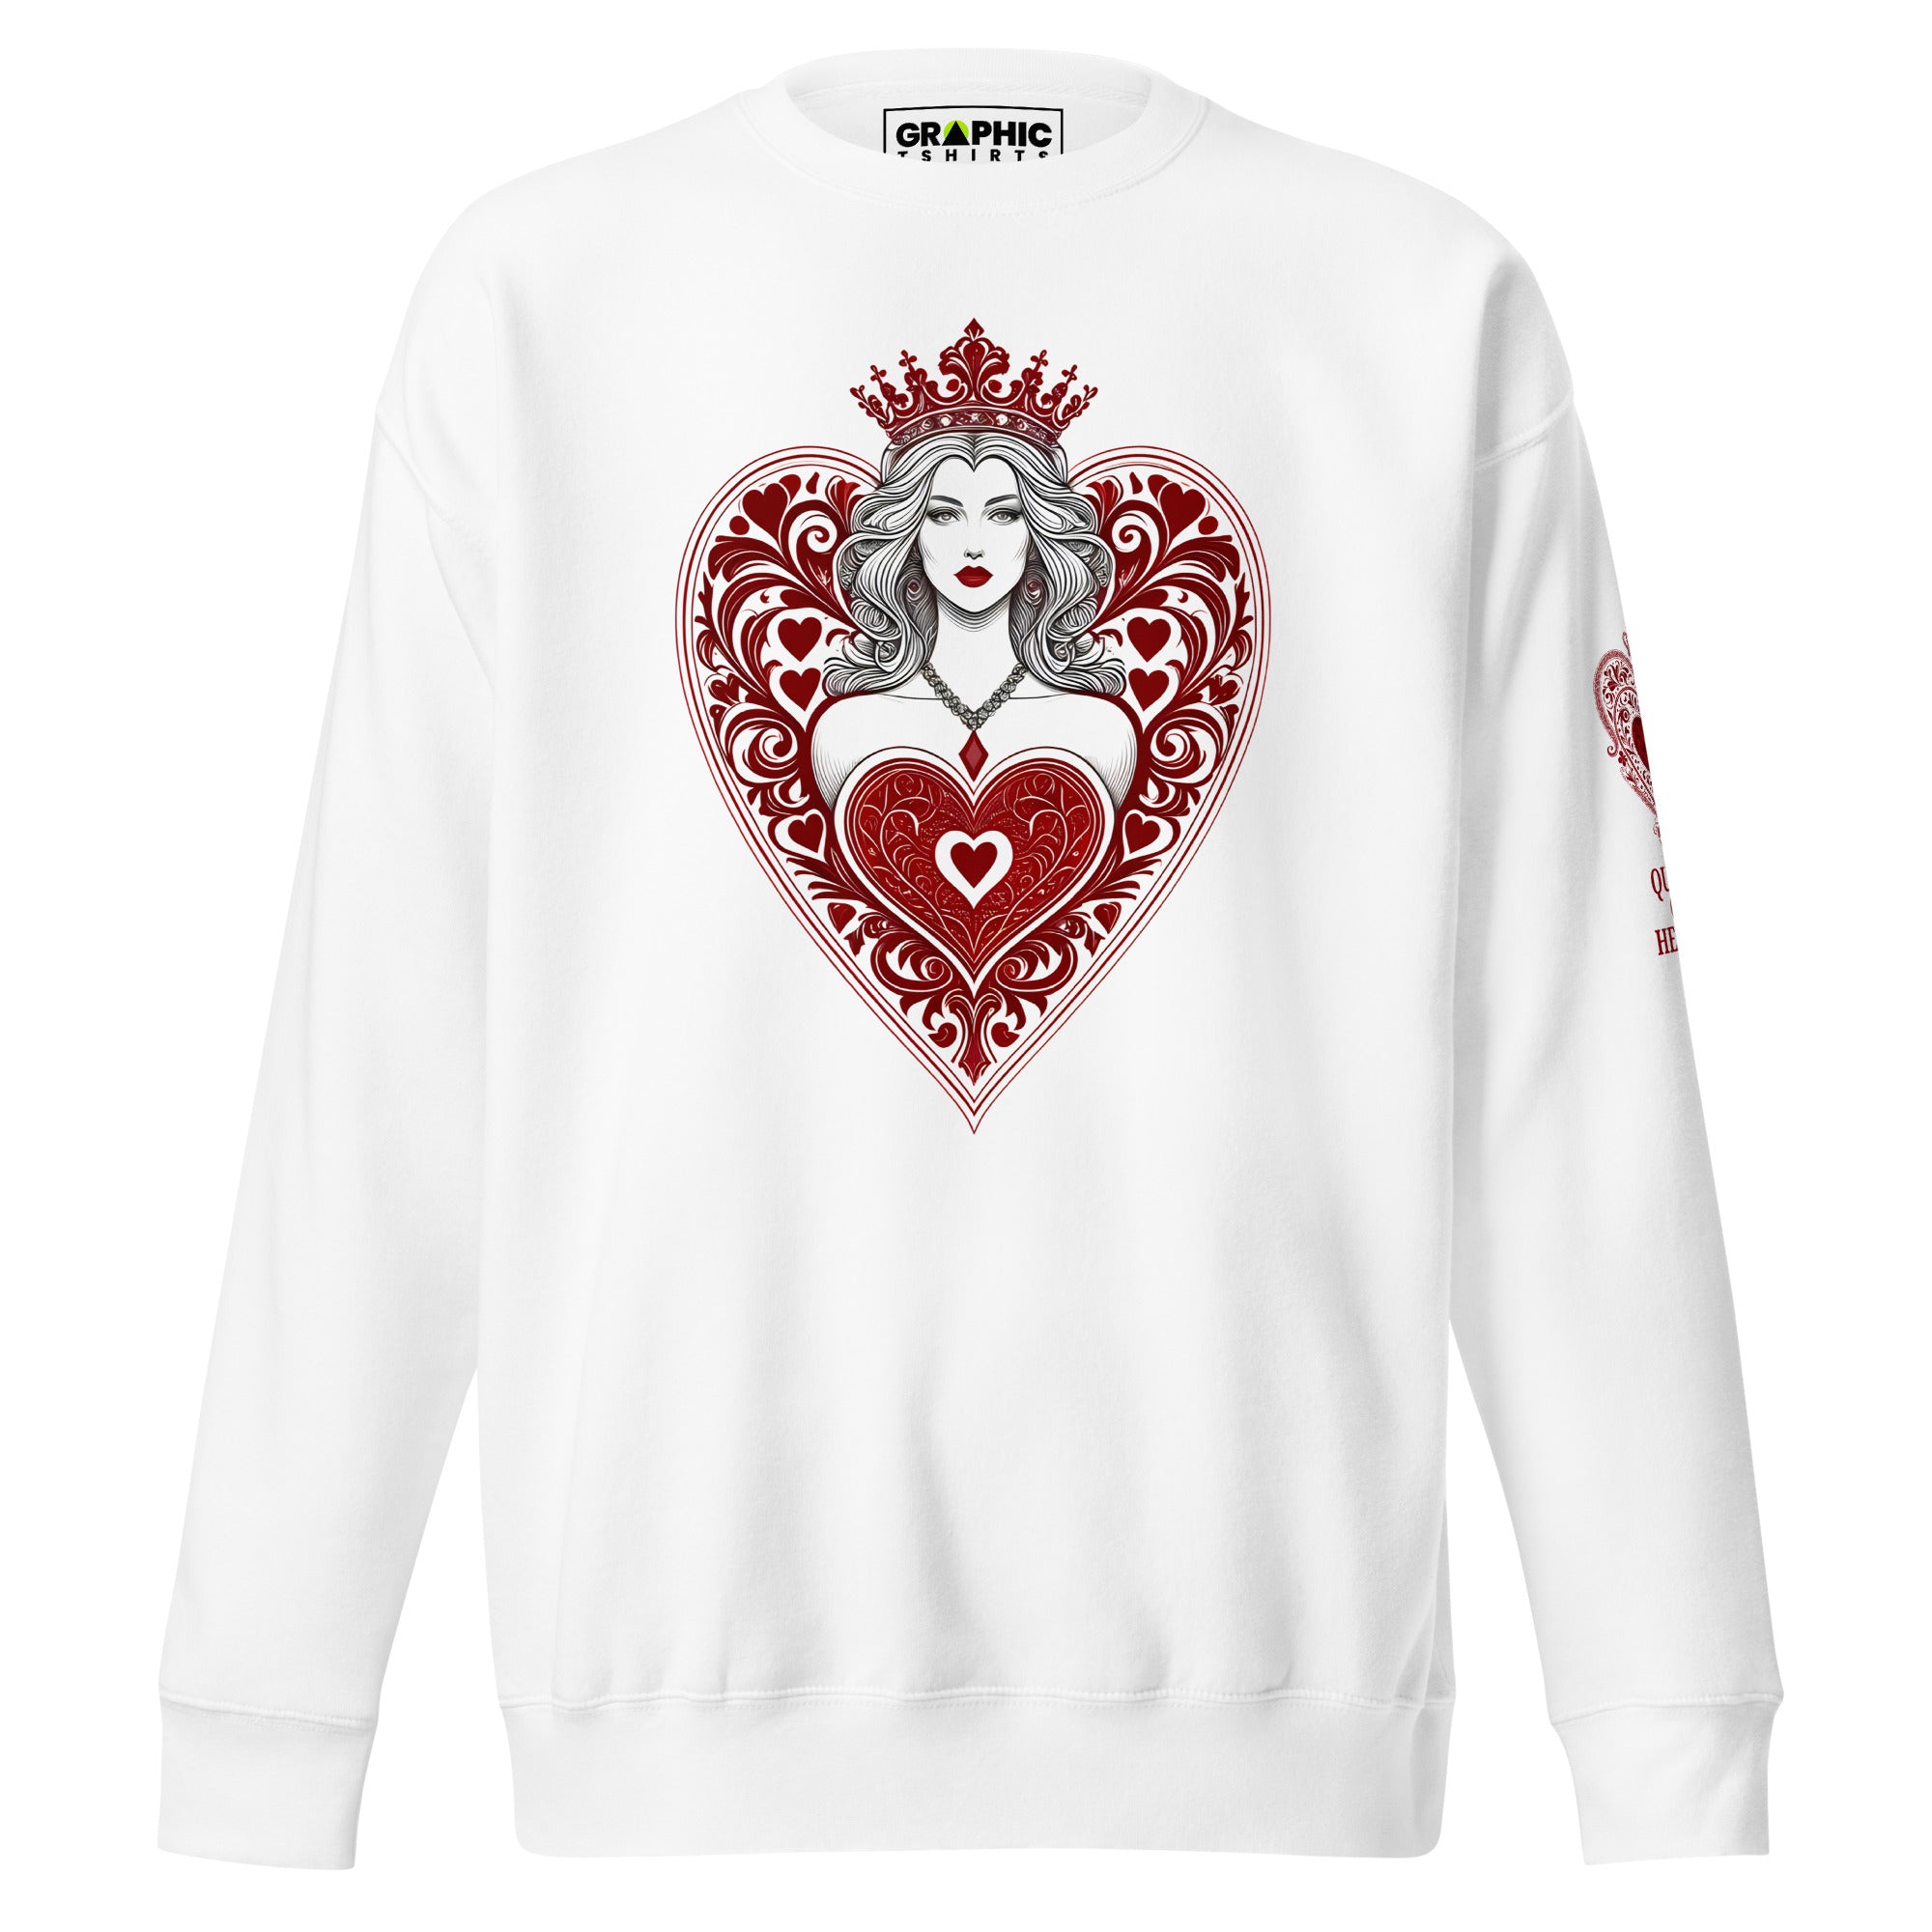 Unisex Premium Sweatshirt - Queen Of Hearts Series v.9